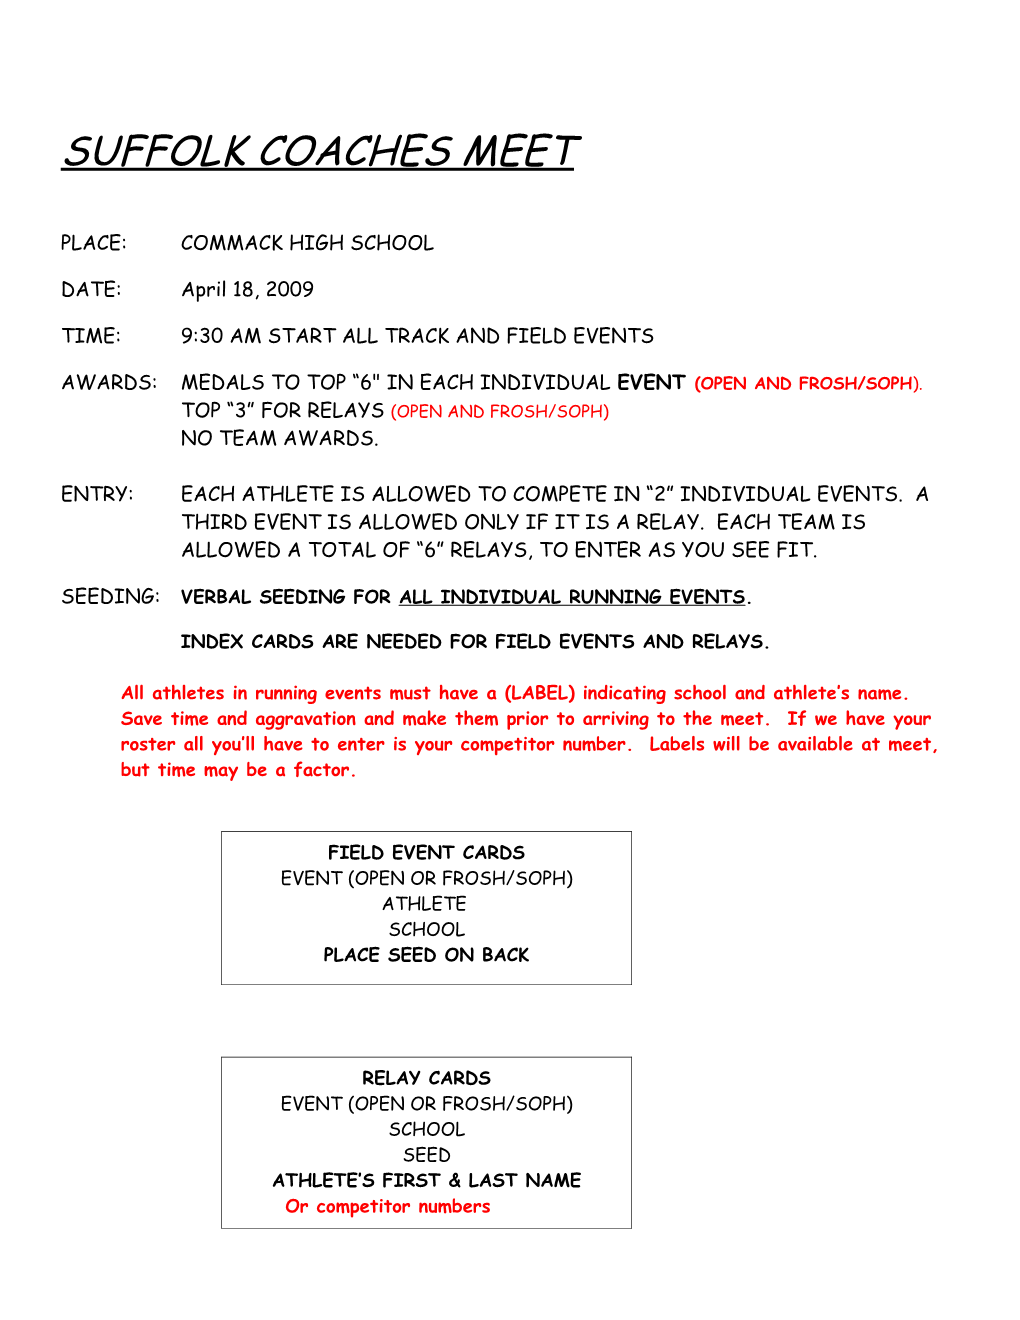 Suffolk Coaches Meet